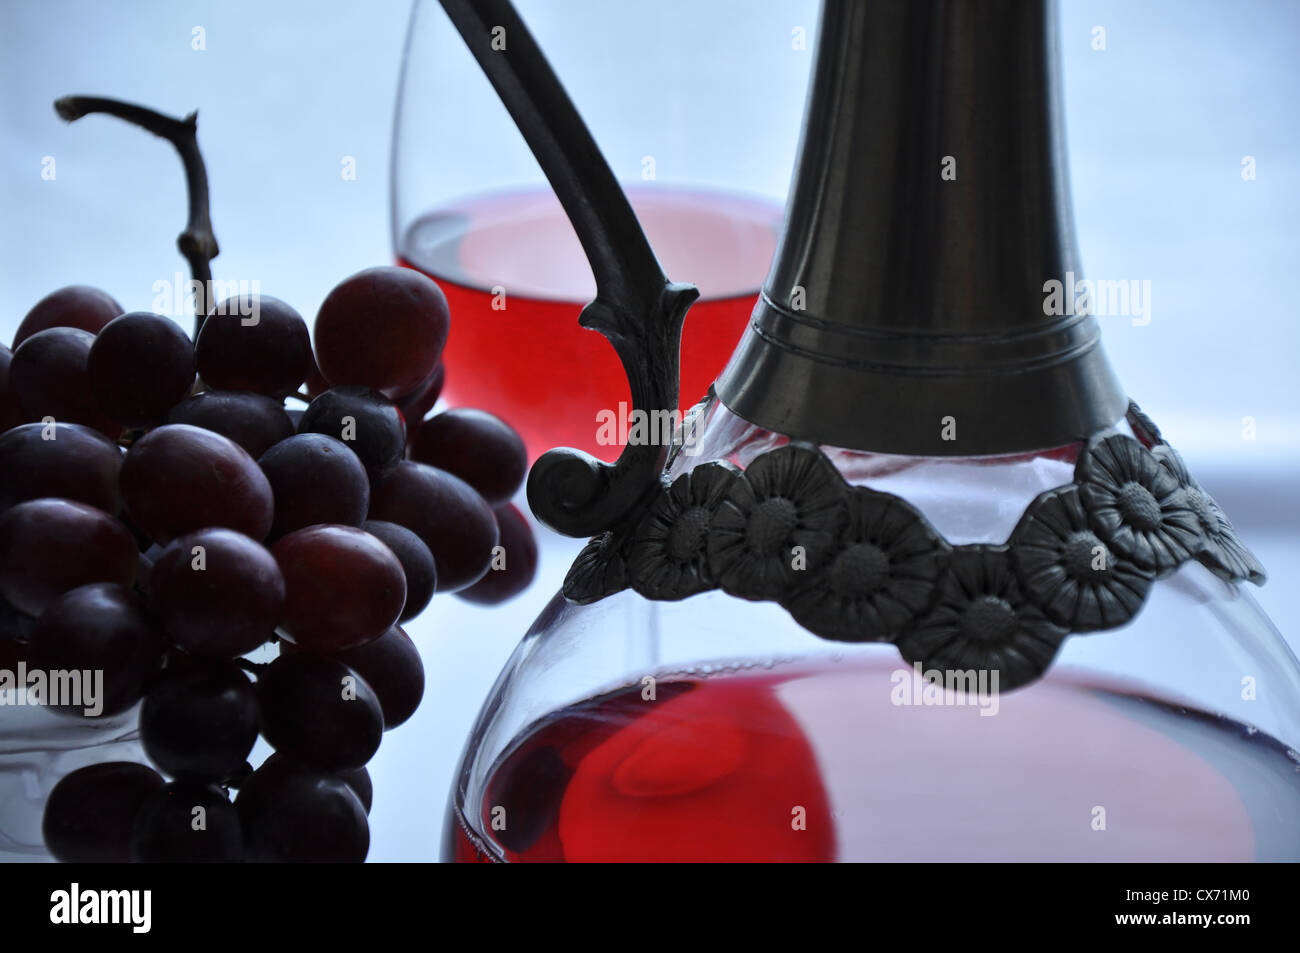 Collier de Bacchus motif raisin en étain anti-gouttes pour le vin